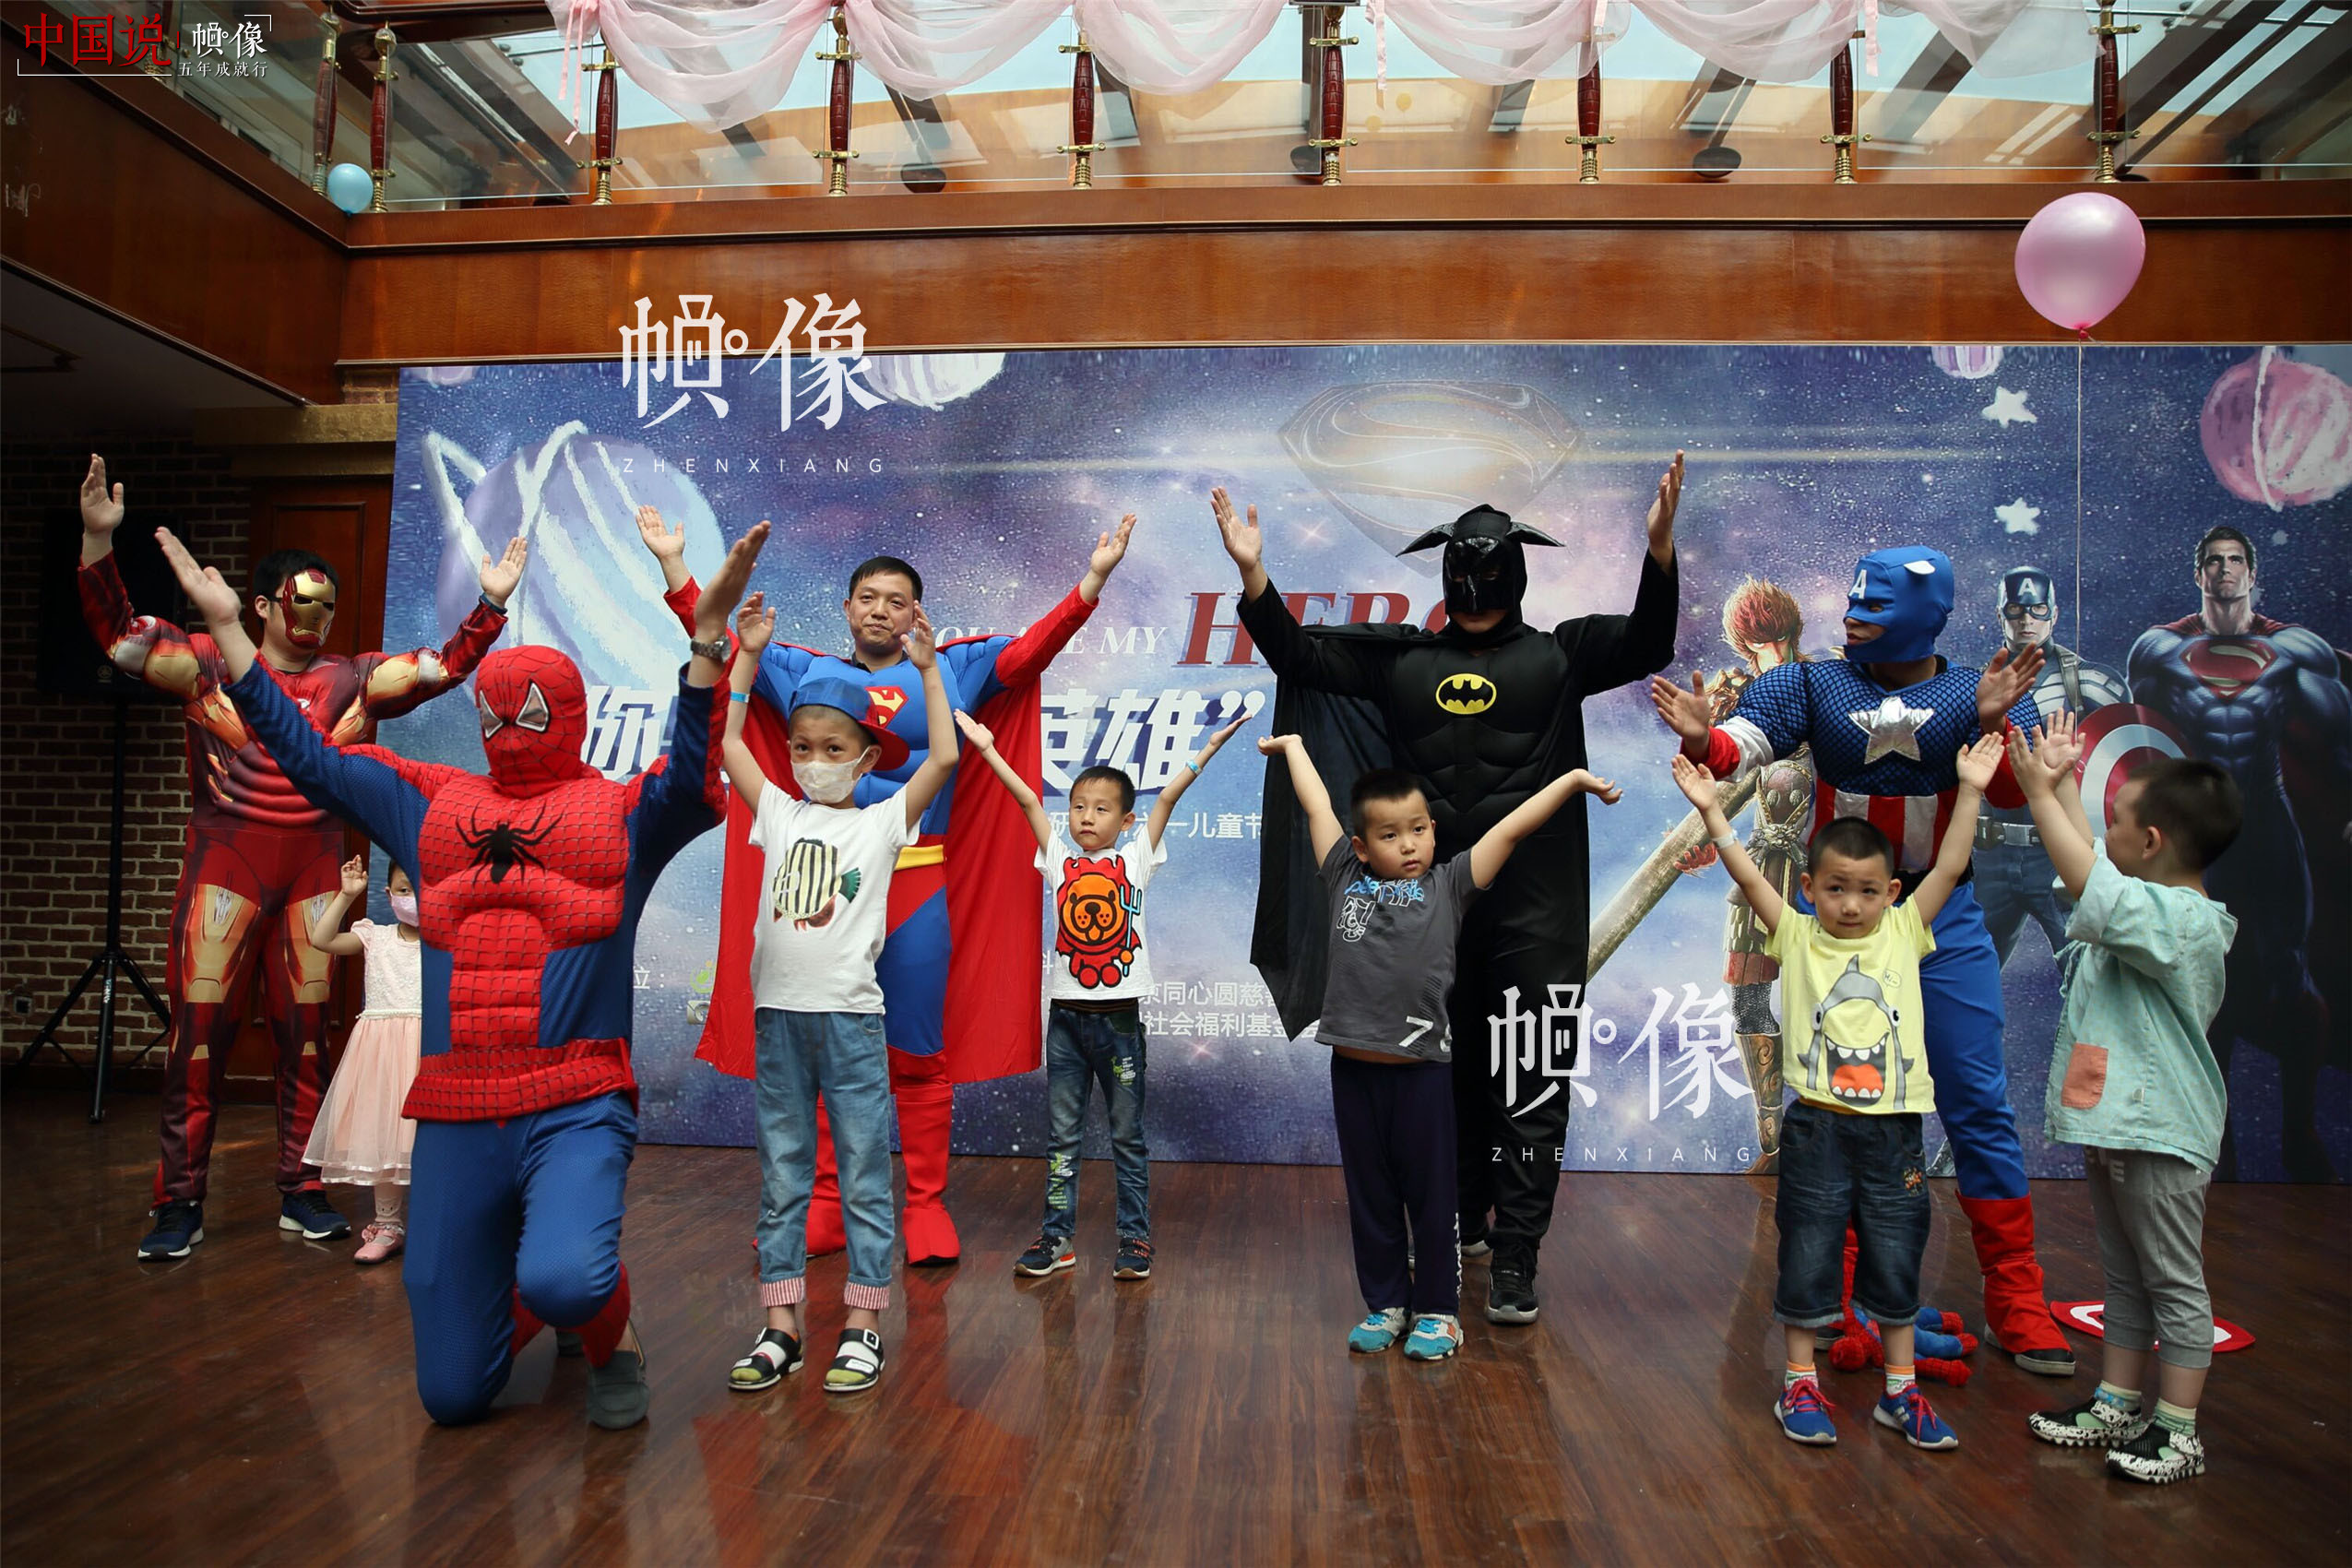 2017年5月26日，北京首都儿科研究所，男护士季长绪扮演的“蜘蛛侠”和众“动漫英雄”与医院住院患儿一起演出。天佑因治疗难受，没法到活动现场，这让准备给天佑一个惊喜的季长绪感到很遗憾。中国网记者 陈维松 摄